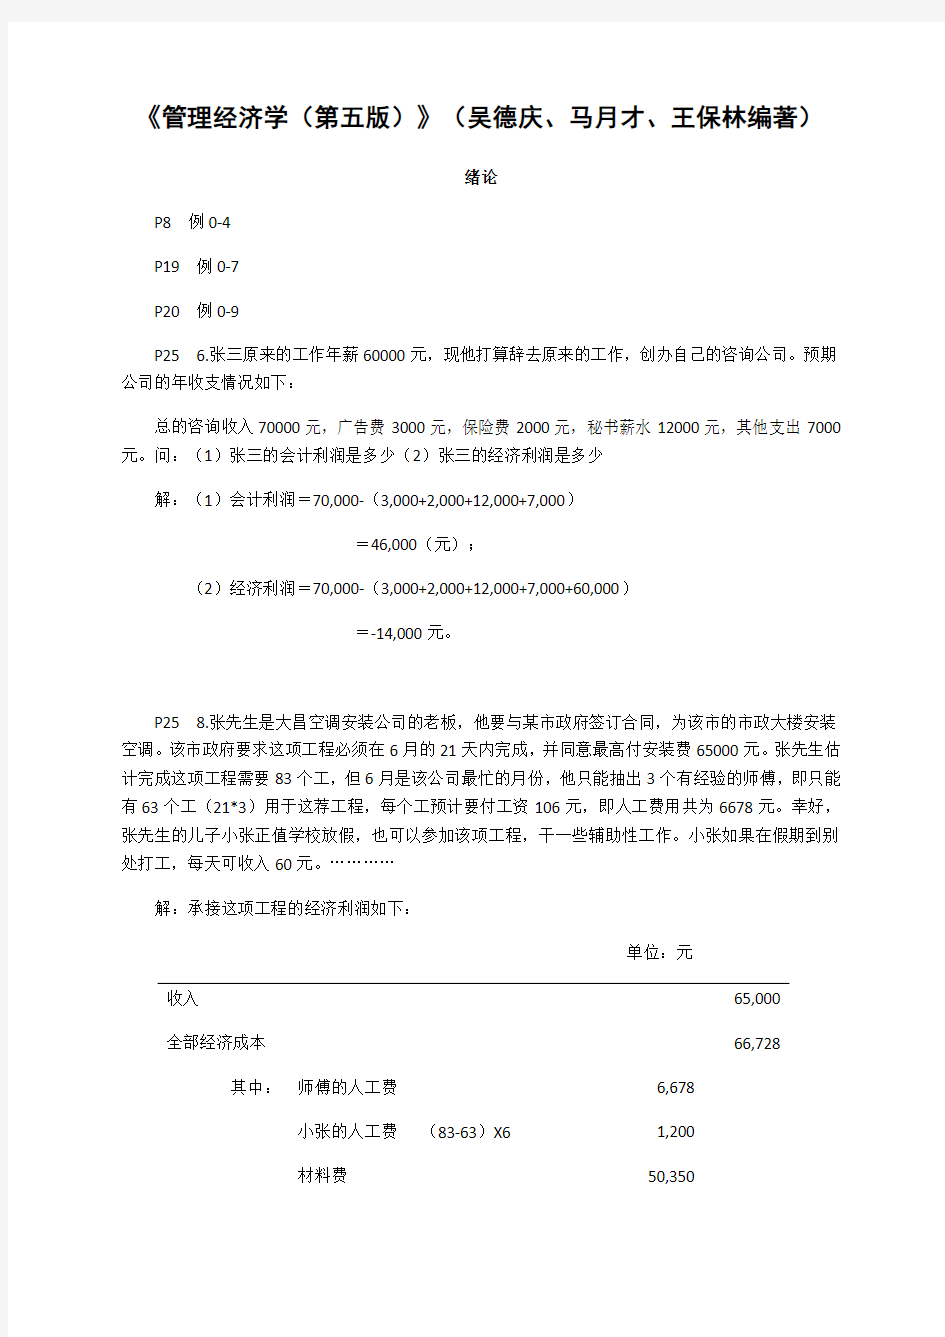 《管理经济学(第五版)》(吴德庆、马月才、王保林编著)作业答案2